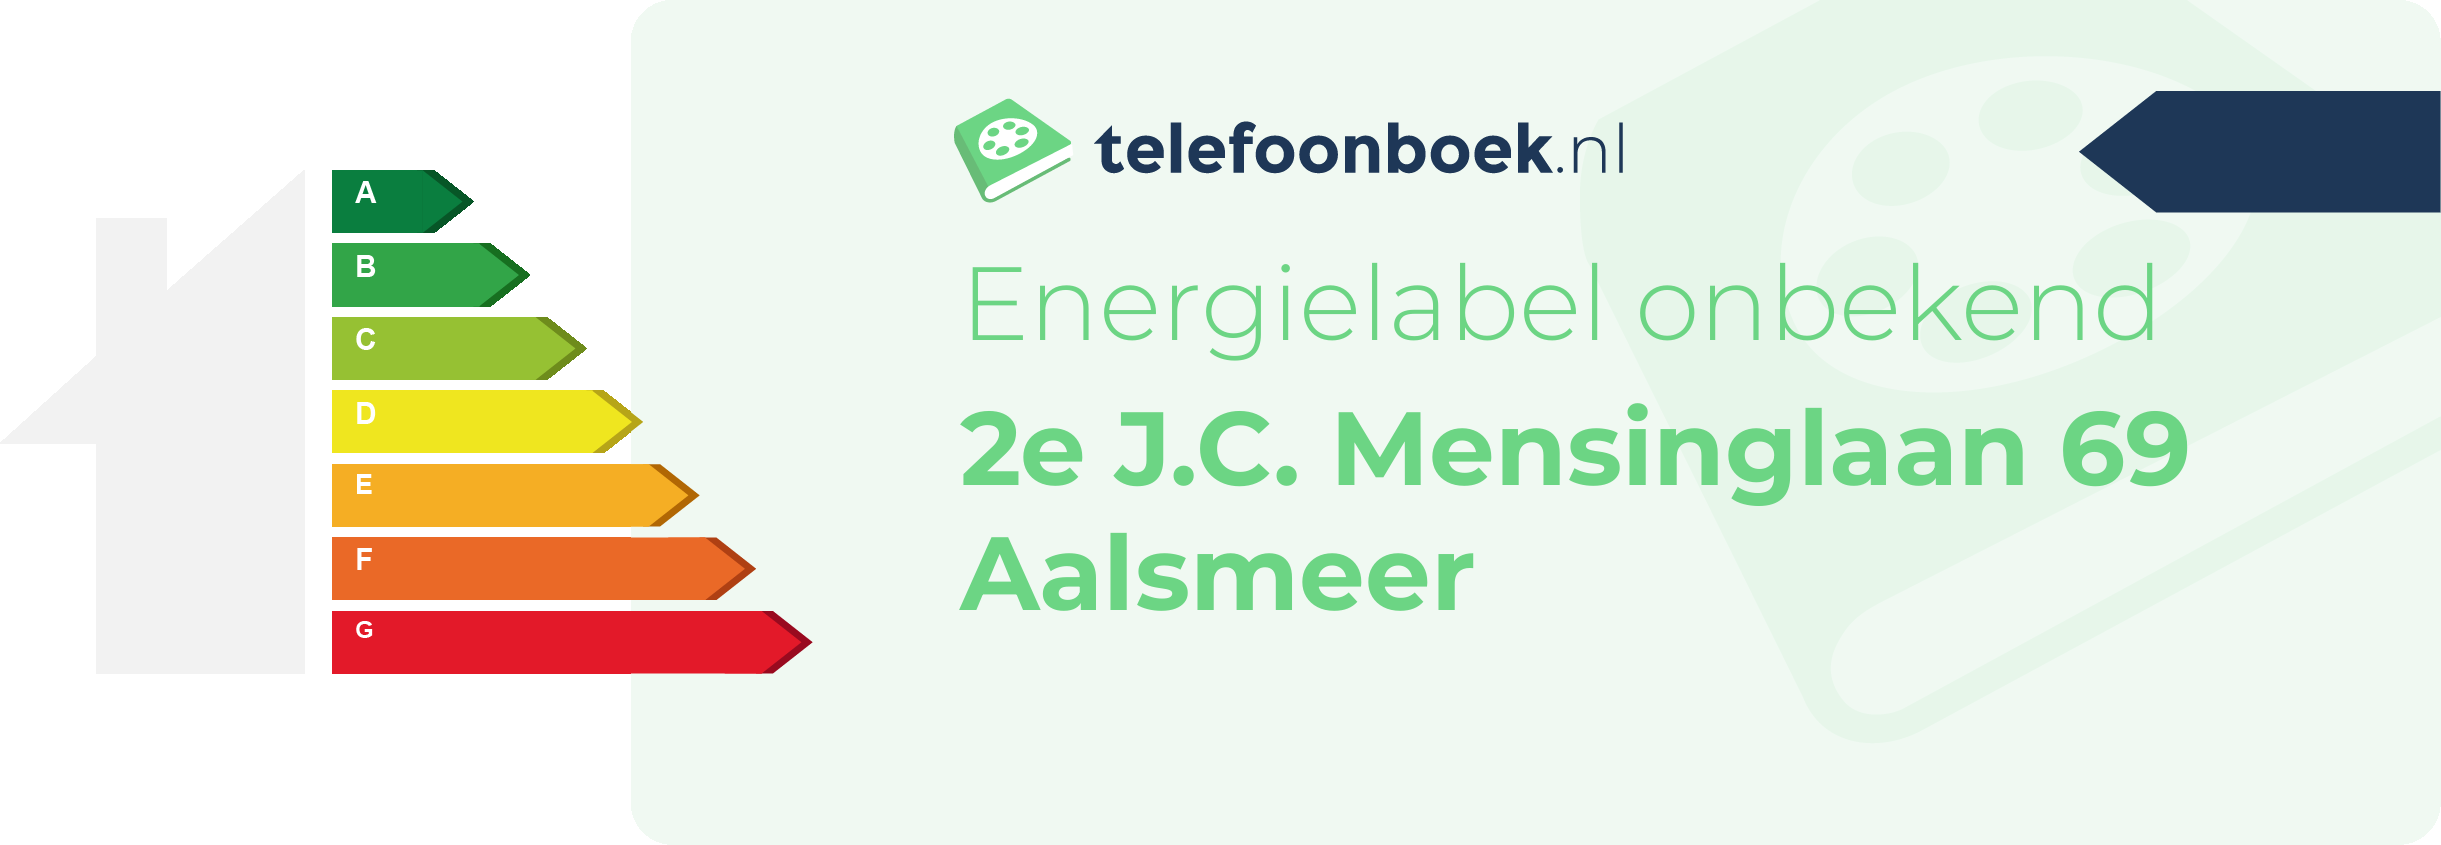 Energielabel 2e J.C. Mensinglaan 69 Aalsmeer